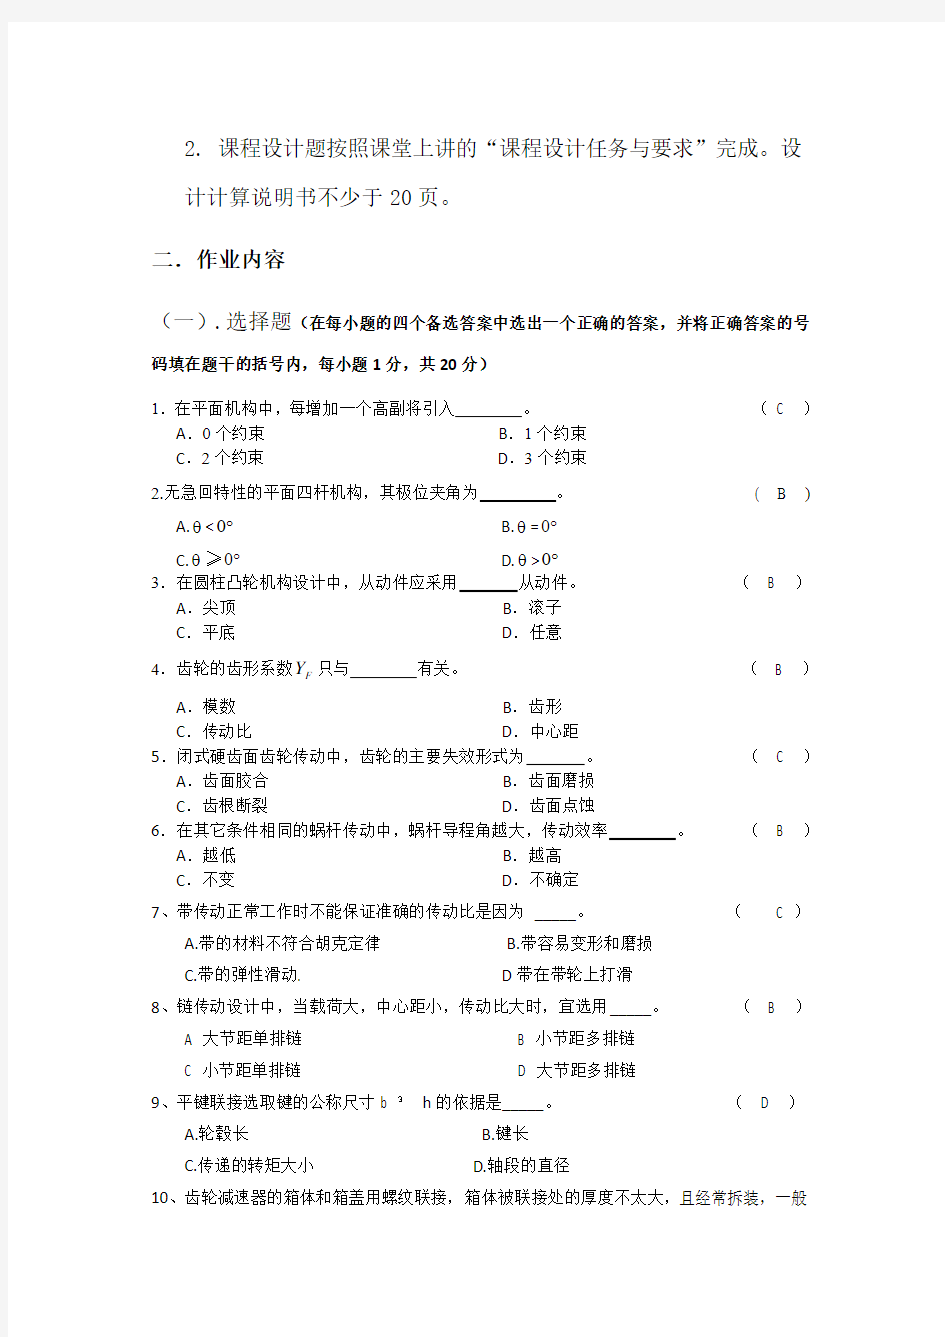 2012郑州大学现代远程教育《机械设计基础》课程考核